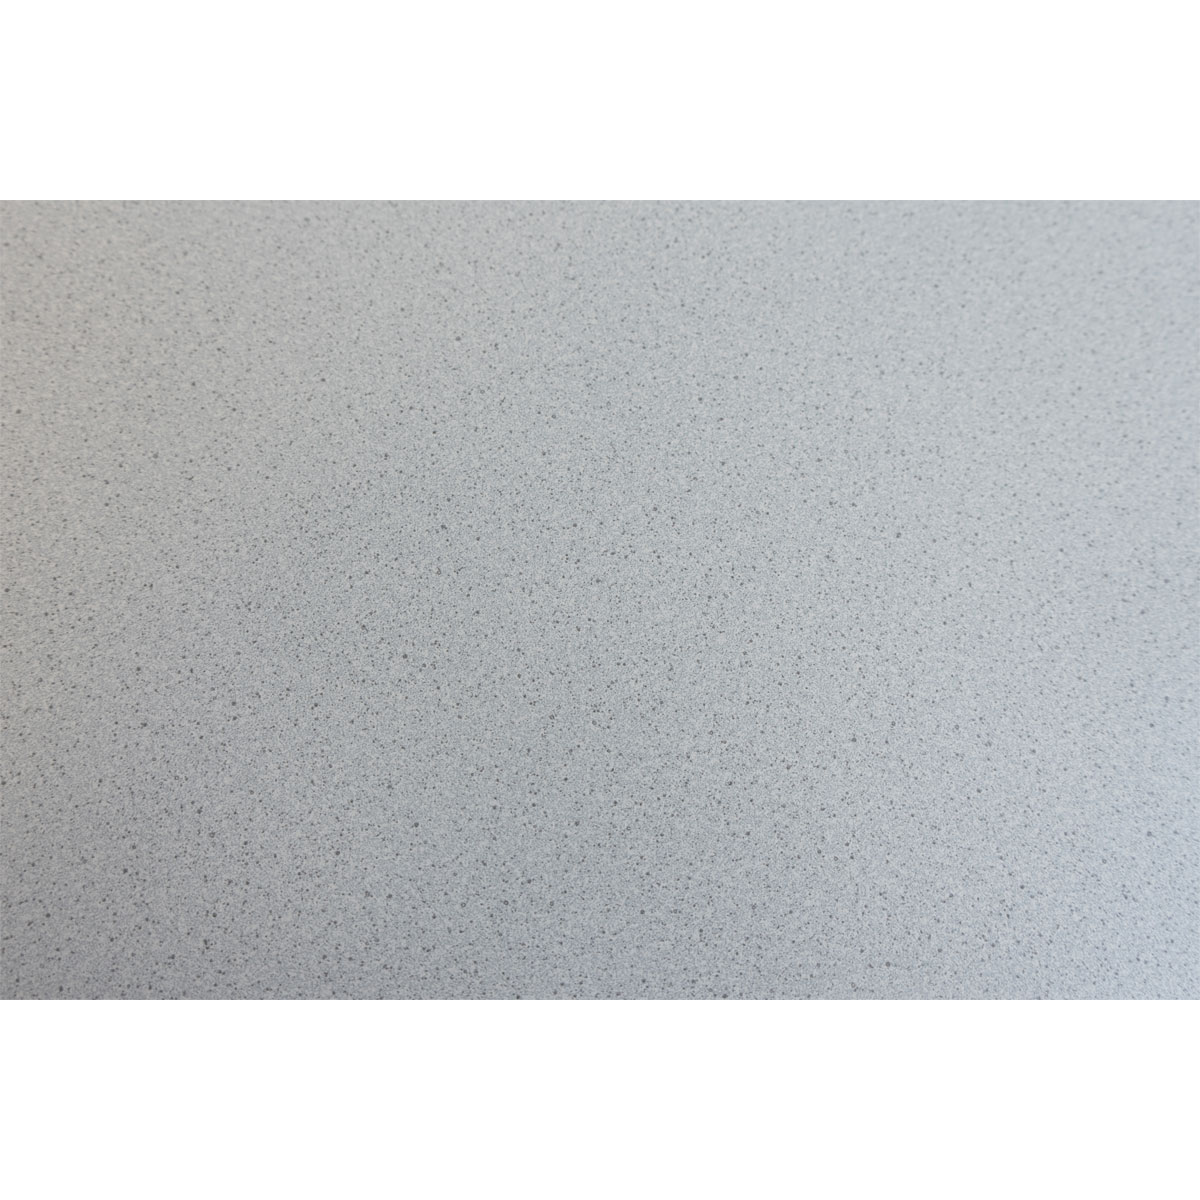 Arbeitsplatte „Wito“, 220x60x28 cm, grau-weiß gepunktet